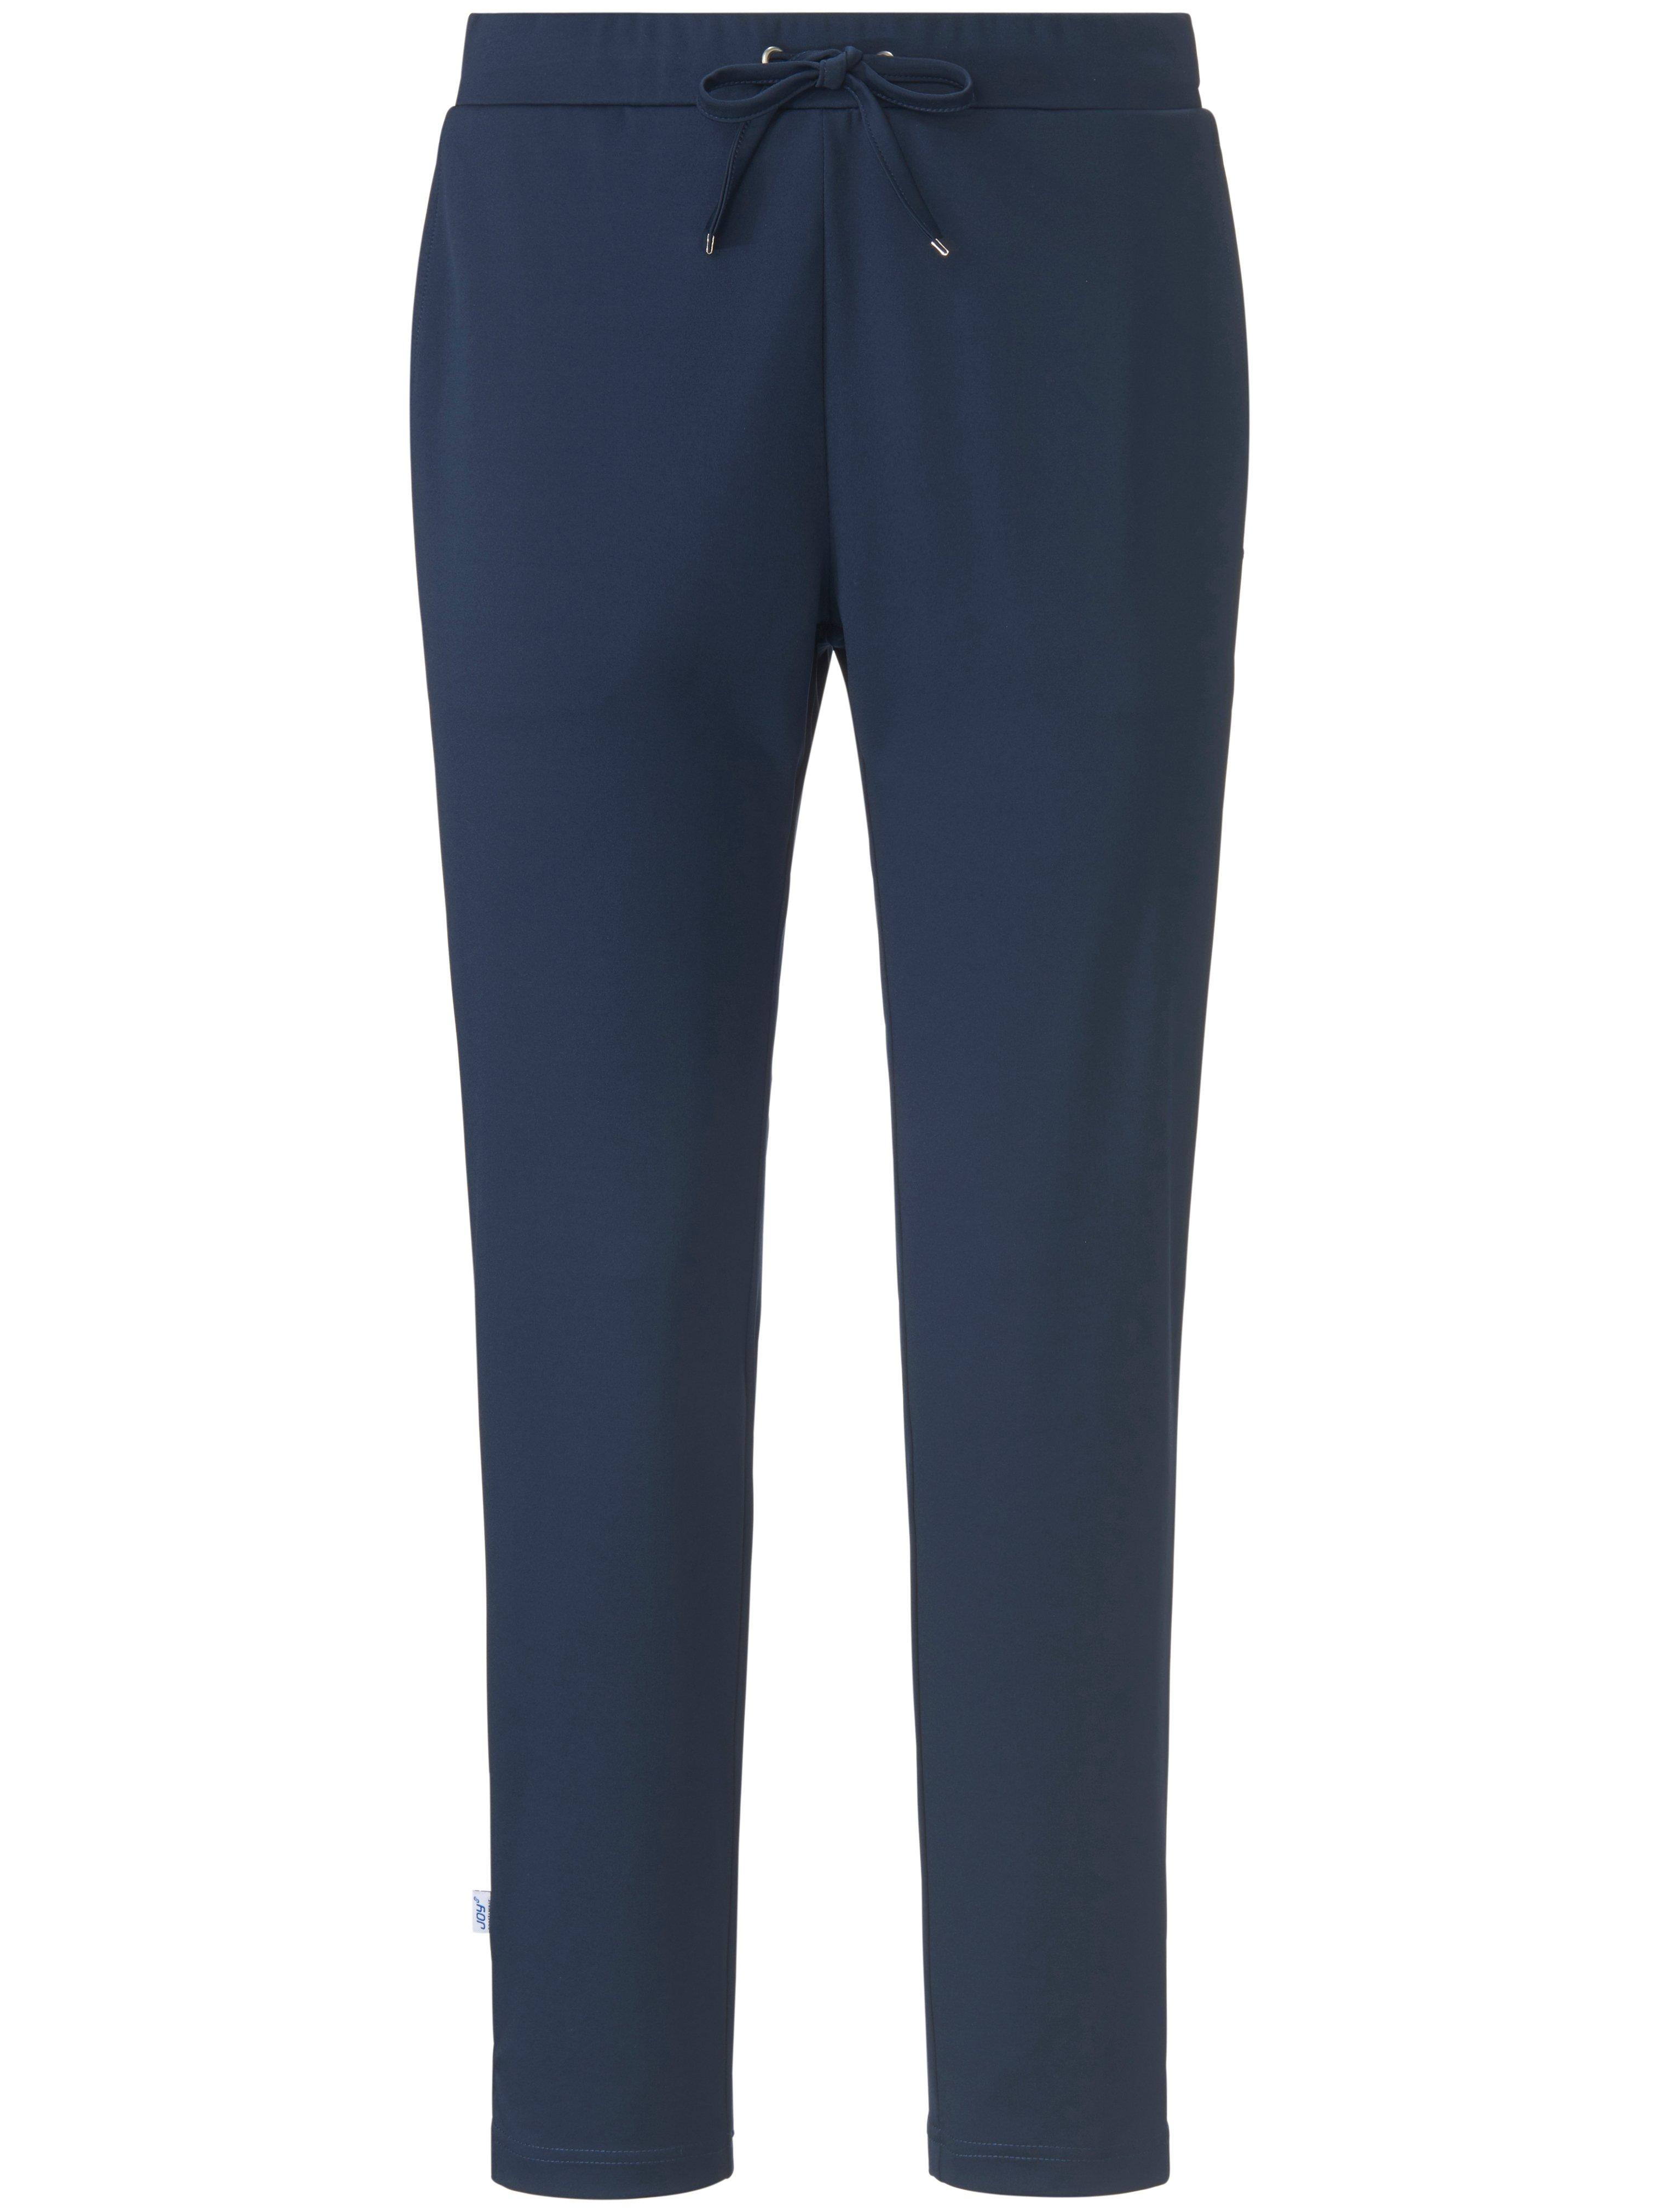 Le pantalon longueur chevilles modèle Nadja  JOY Sportswear bleu